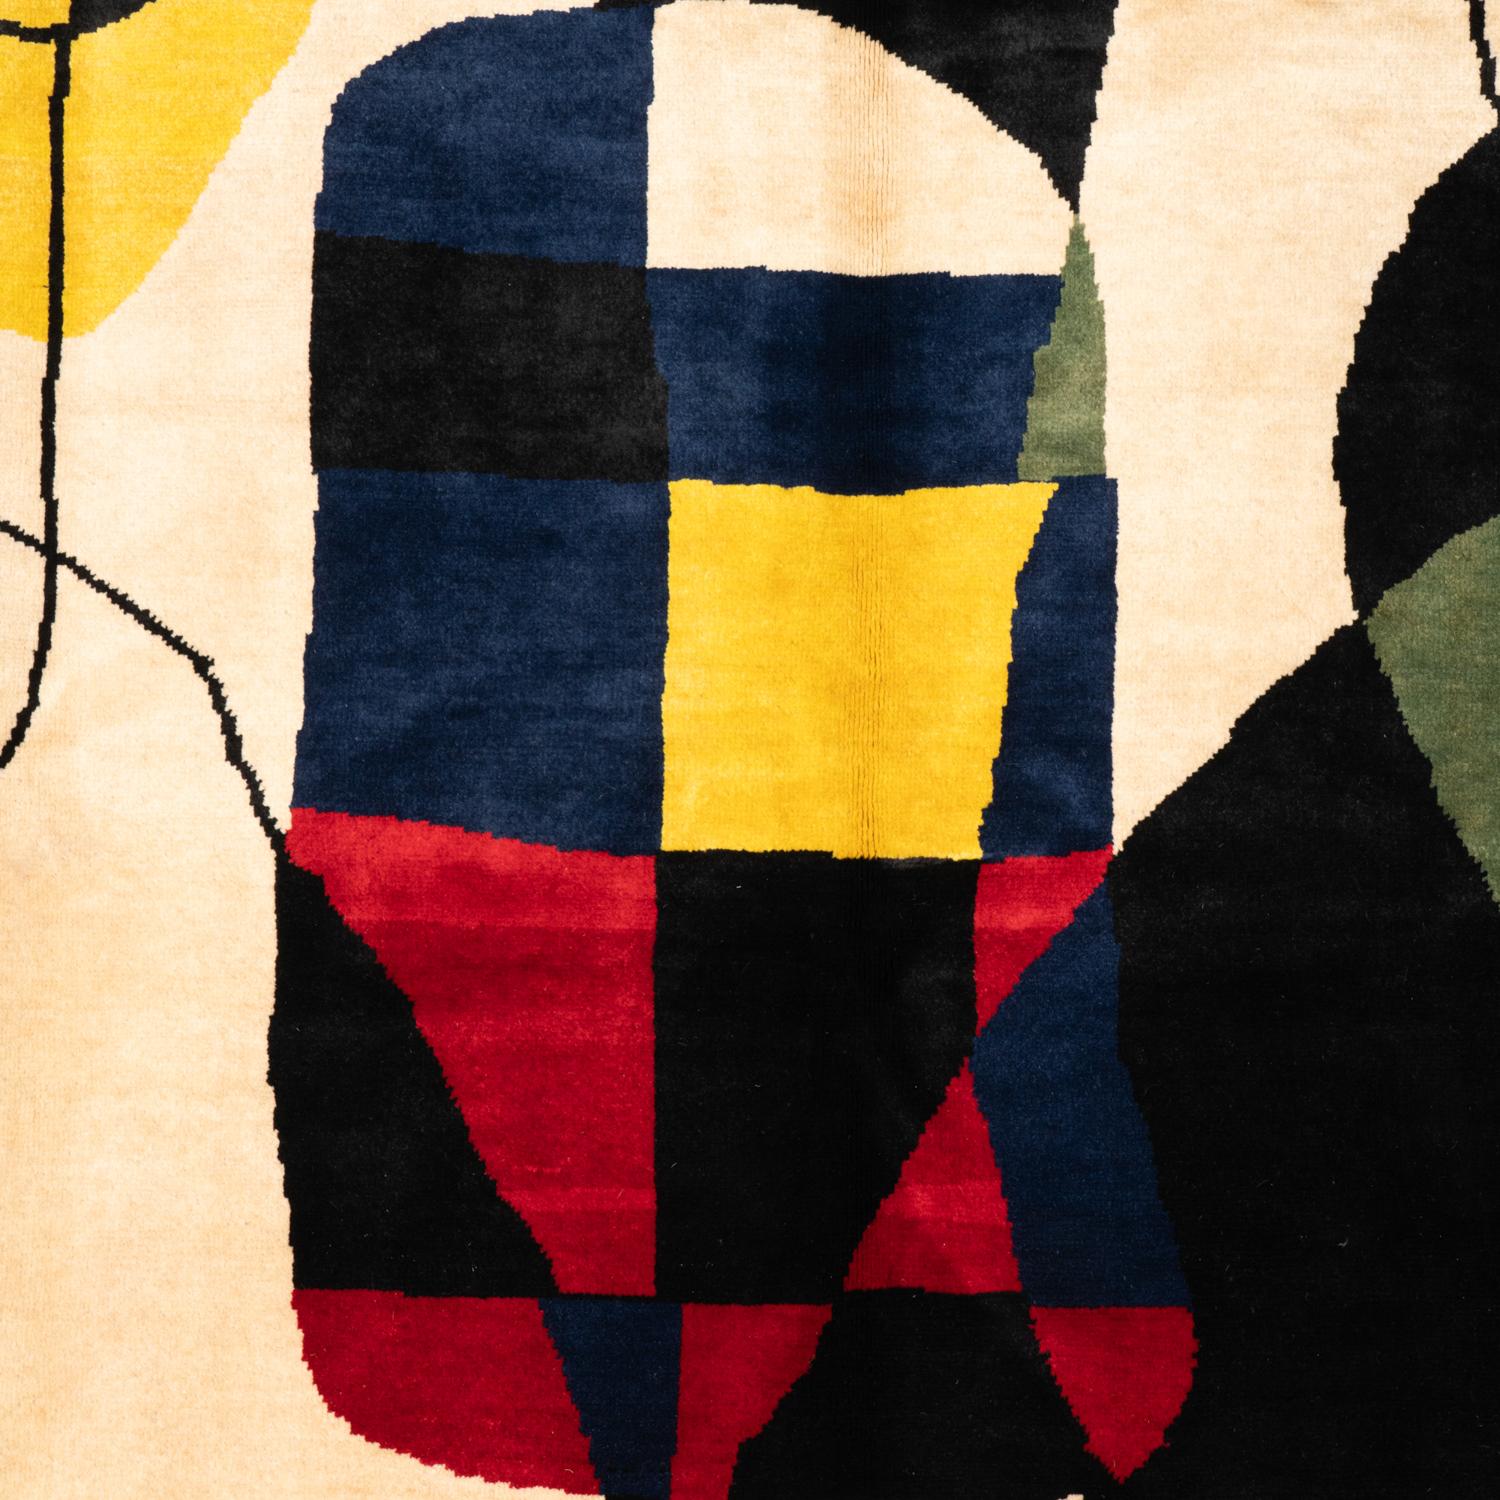 Teppich oder Wandteppich, inspiriert von Joan Miro, in Schwarz-, Gelb- und Rottönen auf beigem Hintergrund, die an Figuren erinnern und abstrakte Formen darstellen. Handgeknüpft und aus Merinowolle.

Zeitgenössische Arbeiten von Handwerkern.

Auf